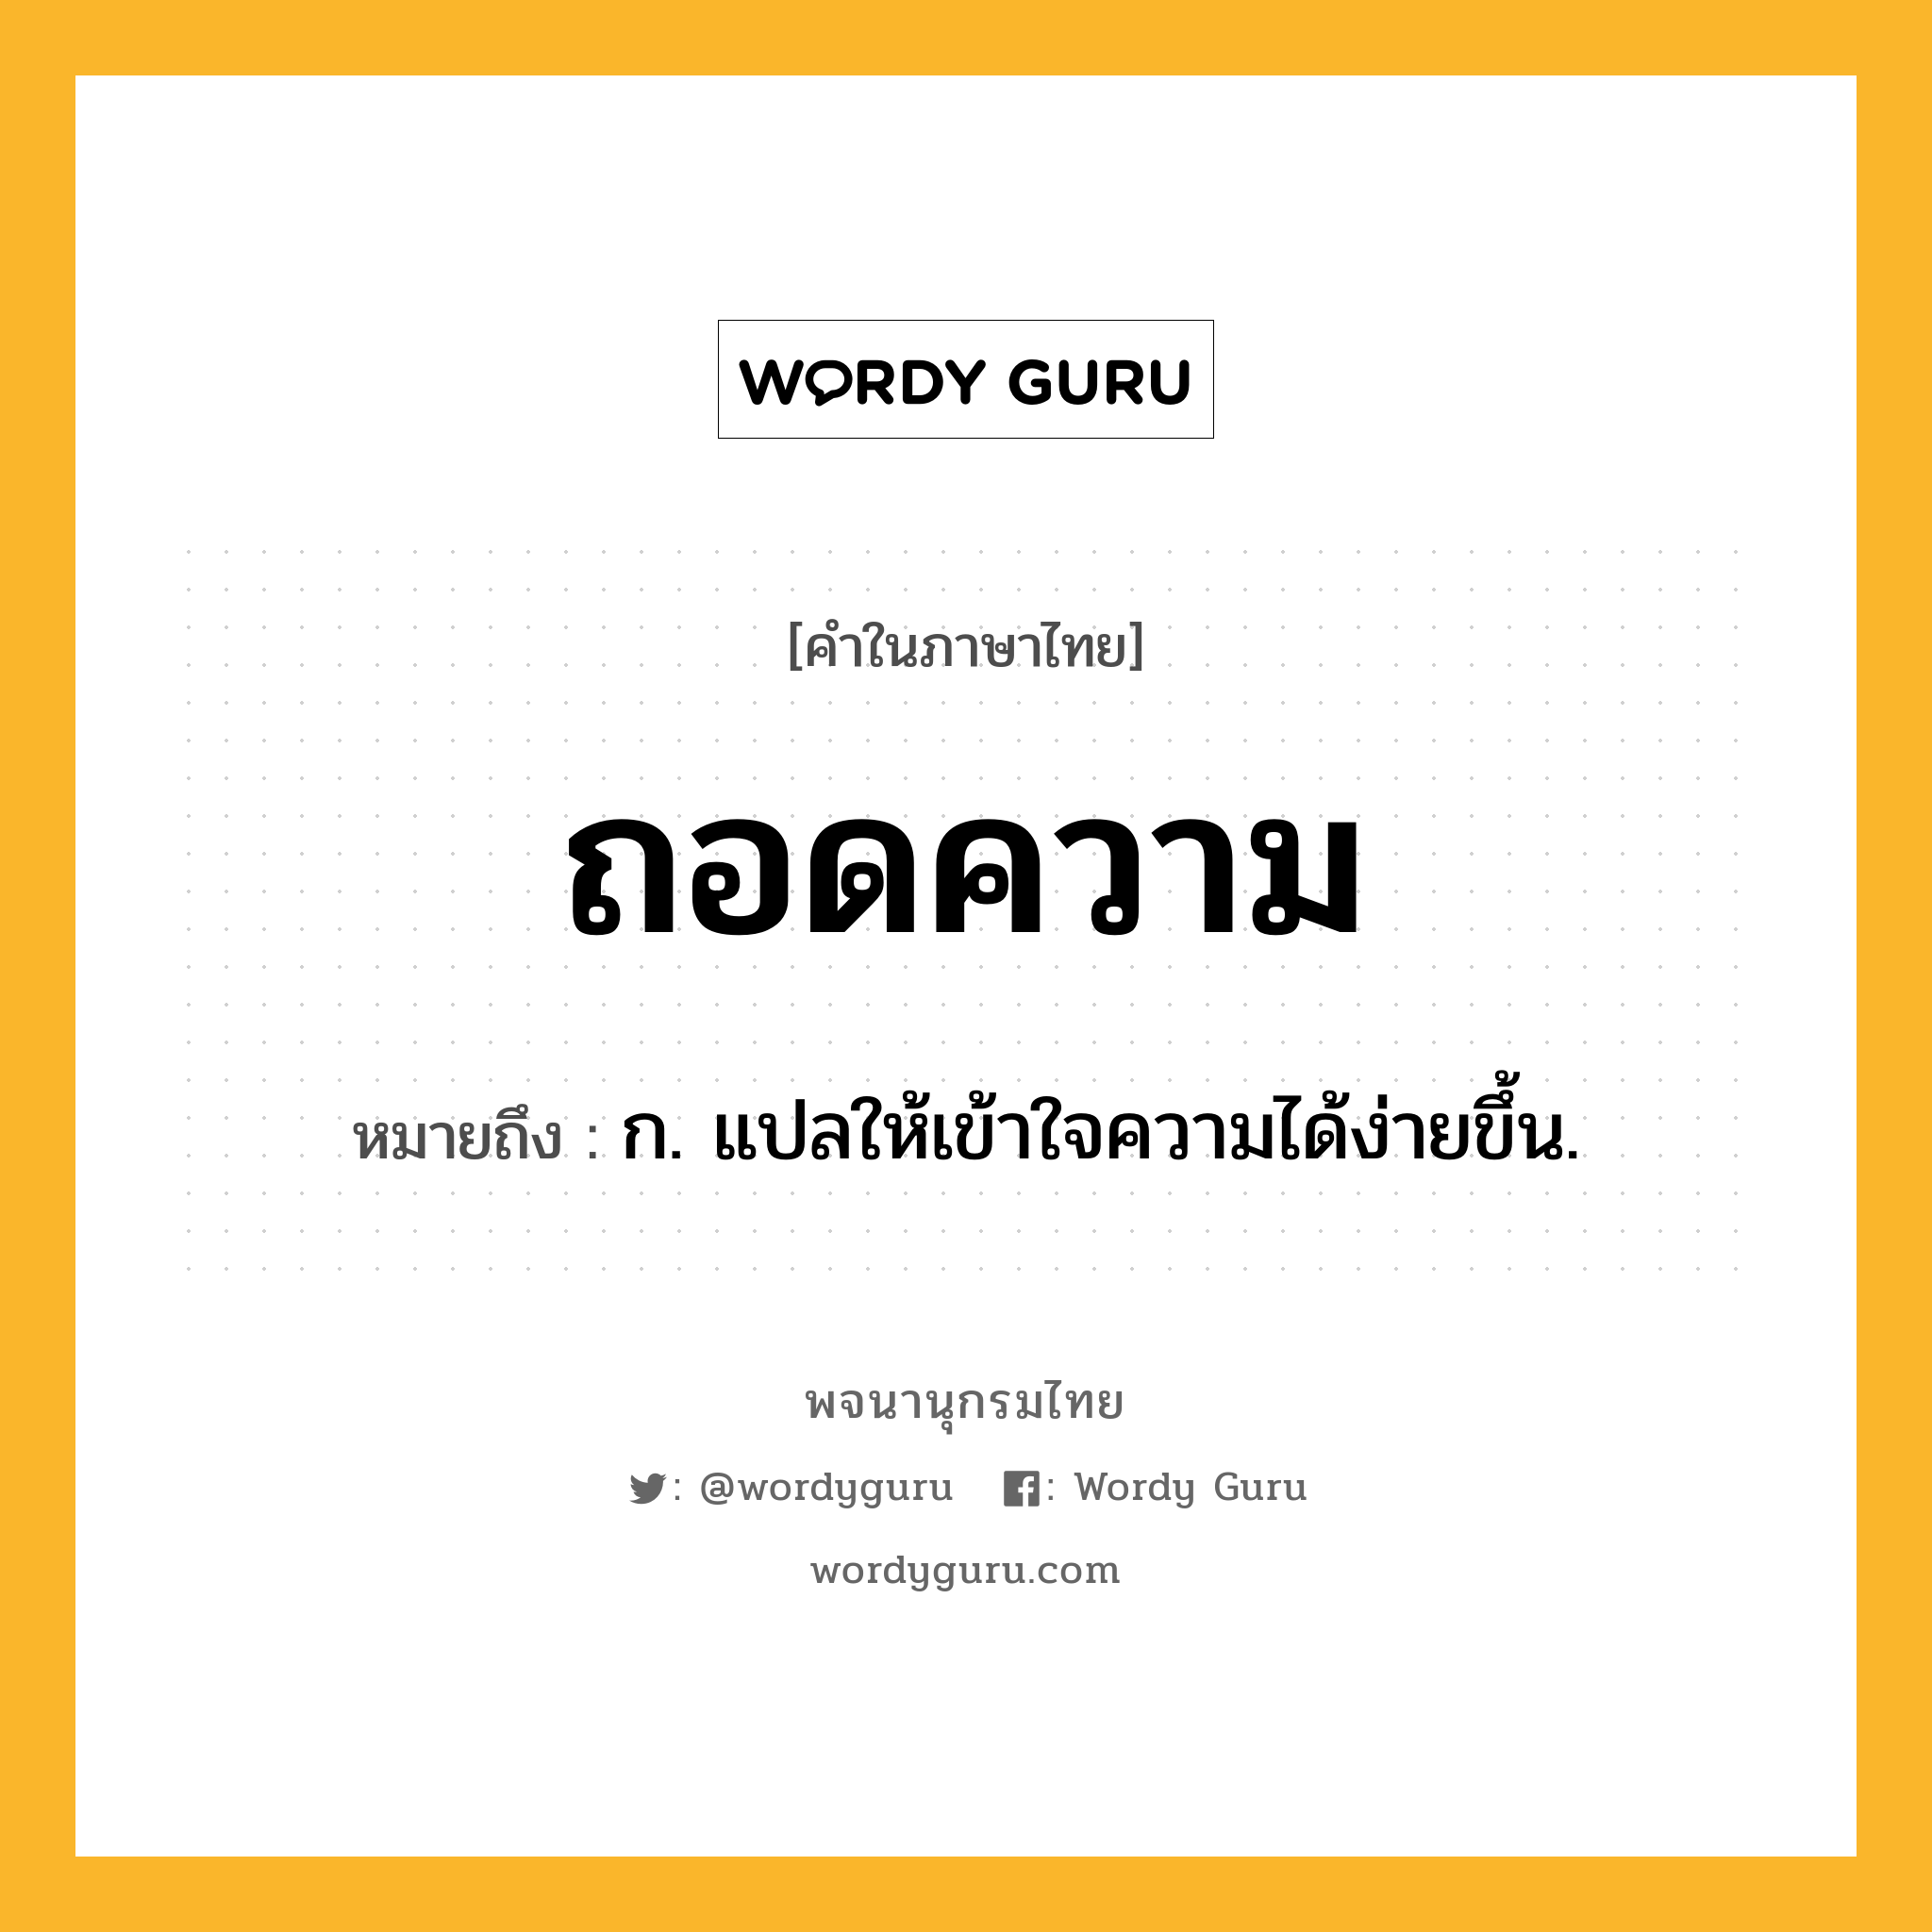 ถอดความ ความหมาย หมายถึงอะไร?, คำในภาษาไทย ถอดความ หมายถึง ก. แปลให้เข้าใจความได้ง่ายขึ้น.